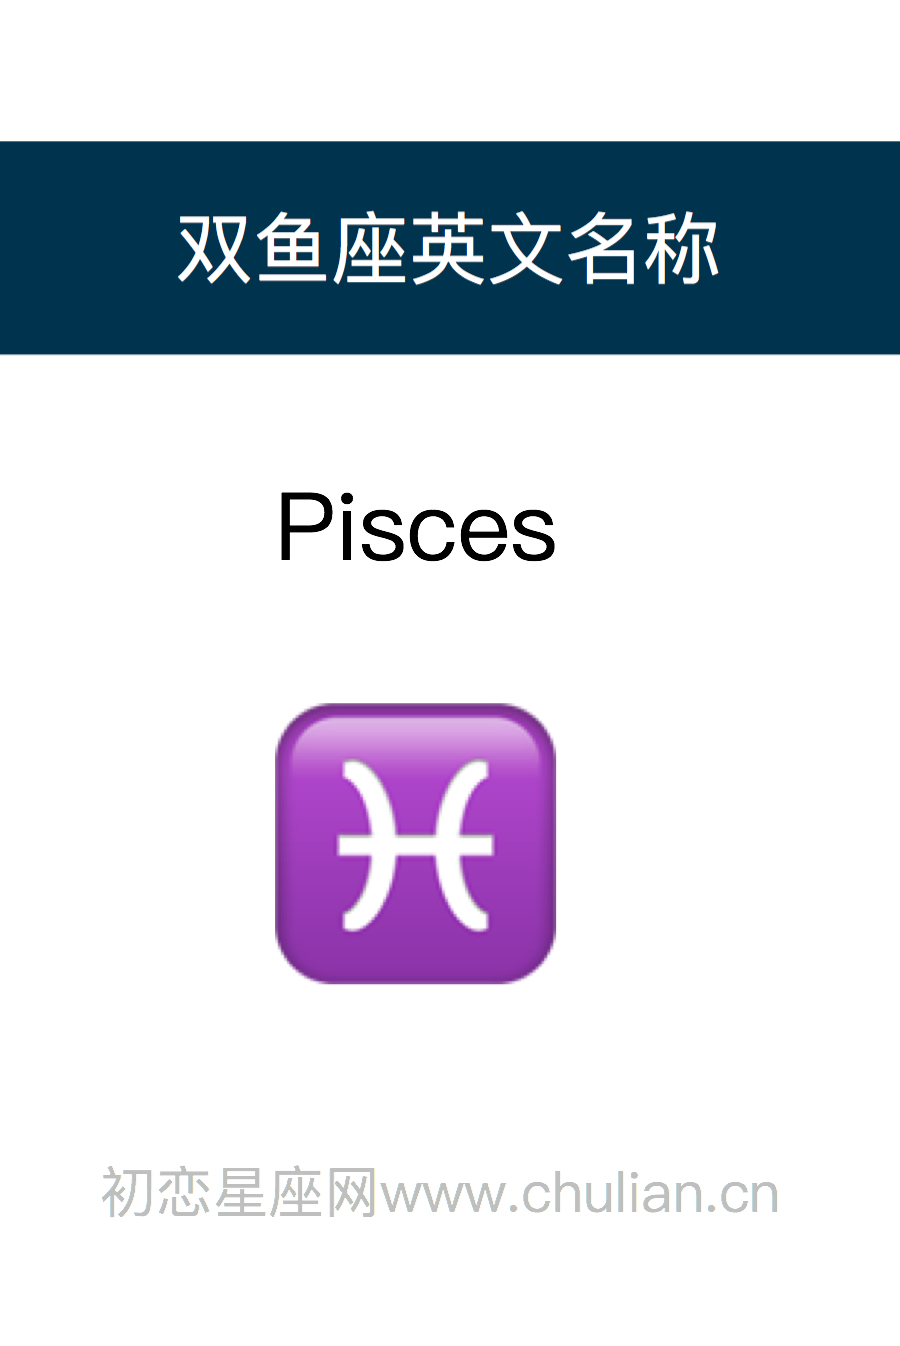 双鱼座英文名称：Pisces